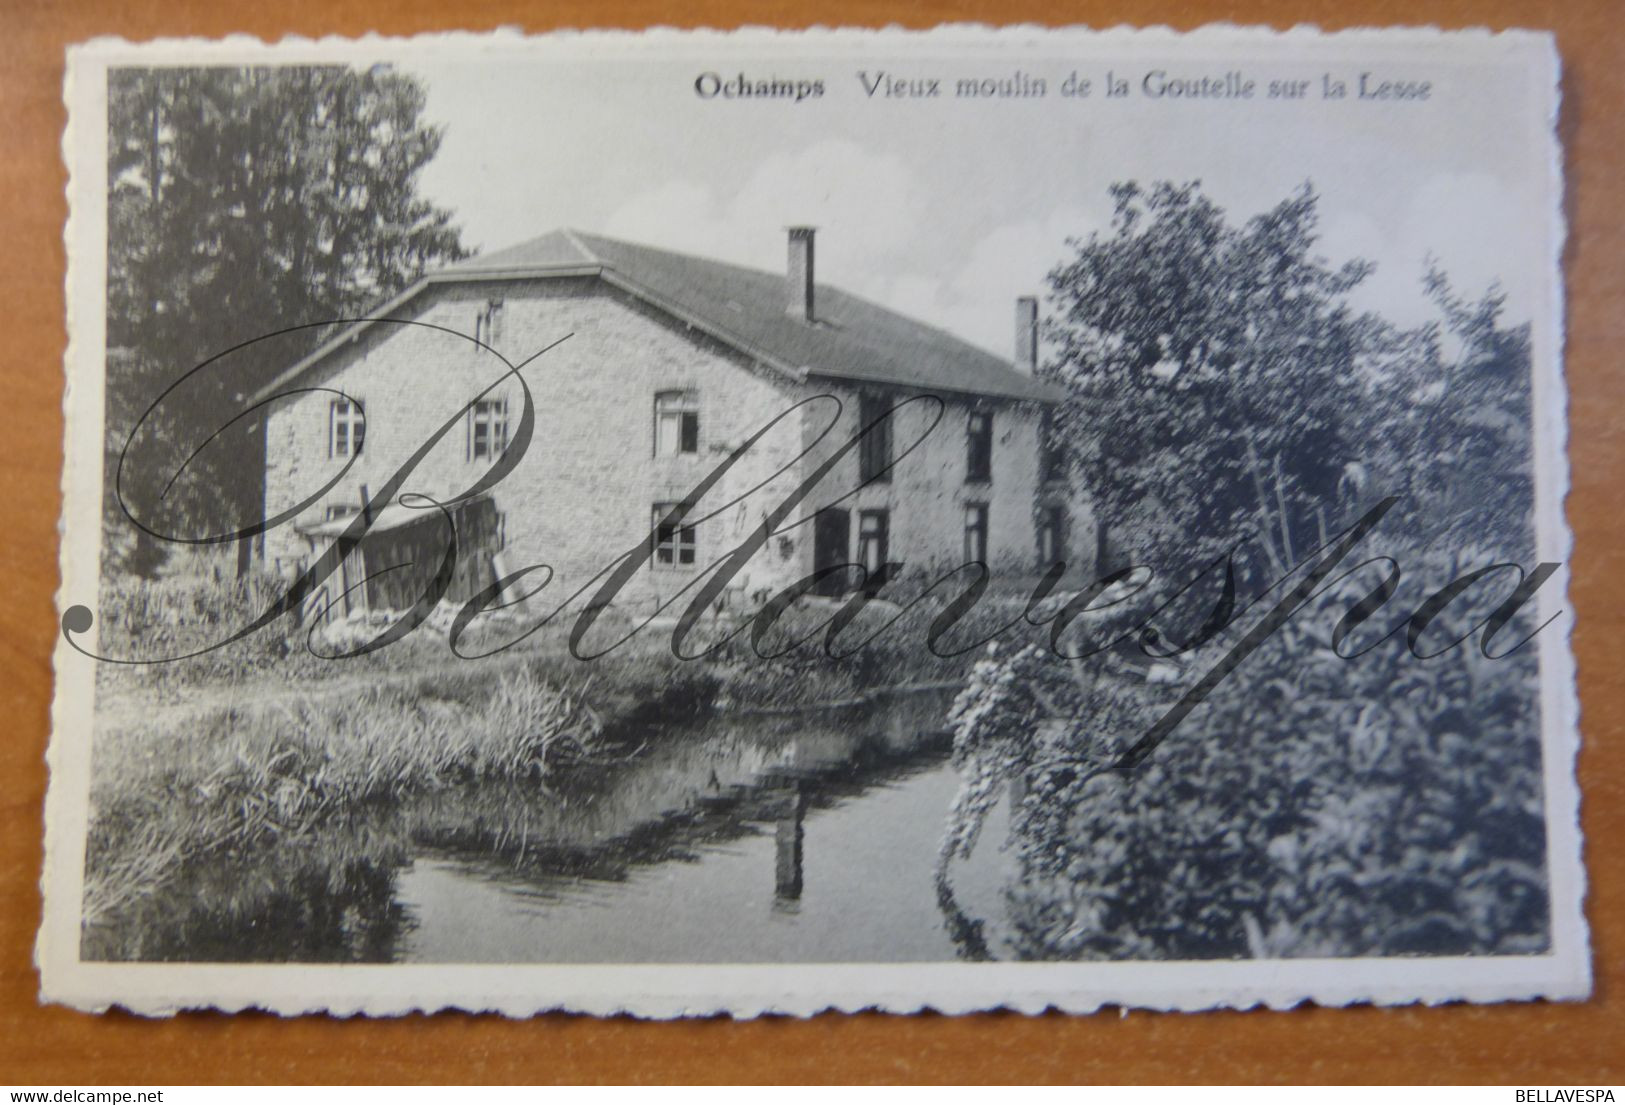 Ochamps Moulin De La Goutelle Sur La Lesse. - Libin